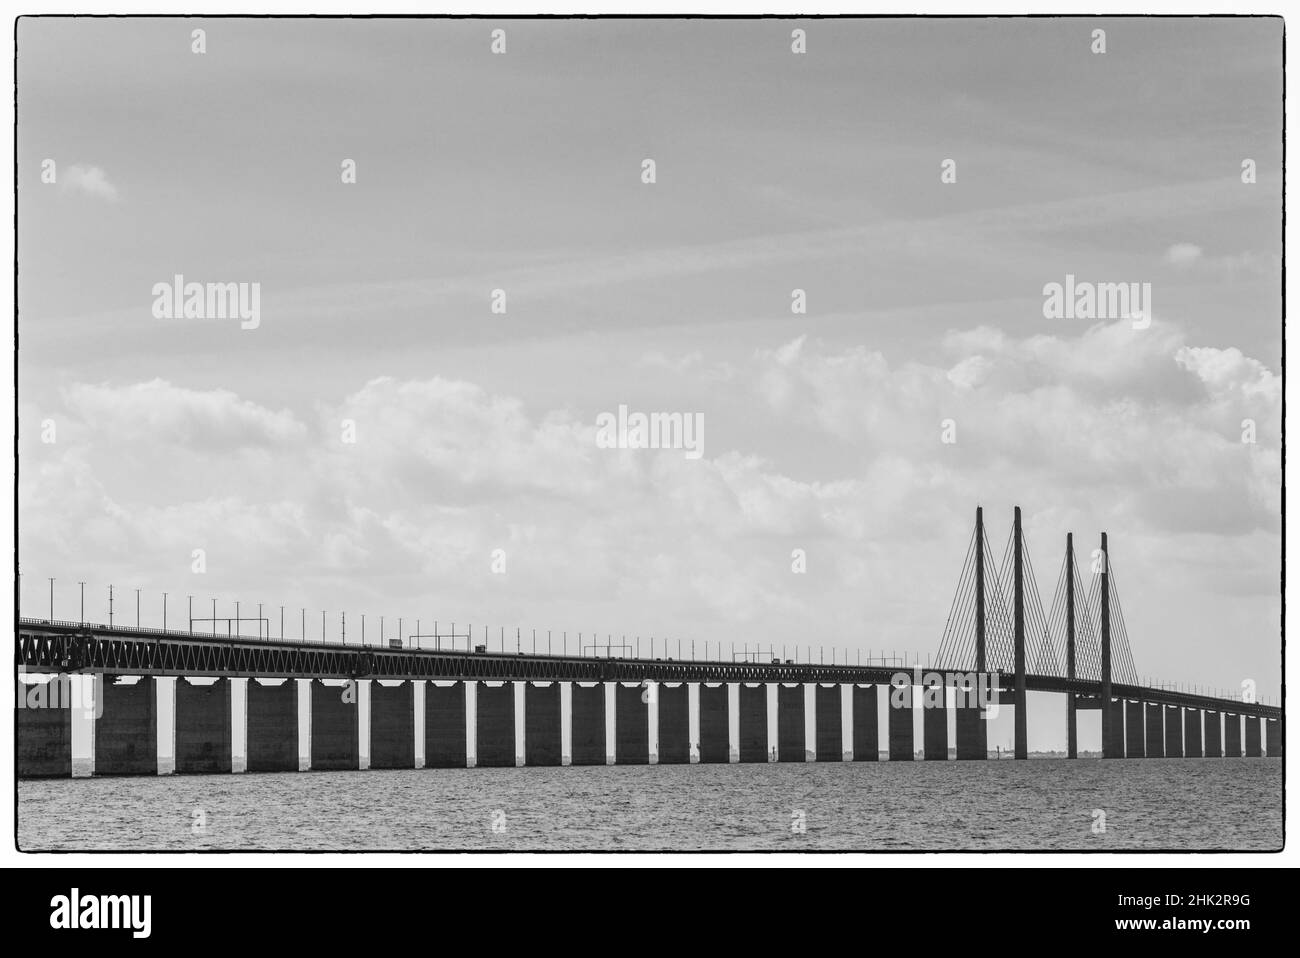 Schweden, Scania, Malmö, Oresund-Brücke, längste Kabelbrücke Europas, die Schweden und Dänemark miteinander verbindet Stockfoto